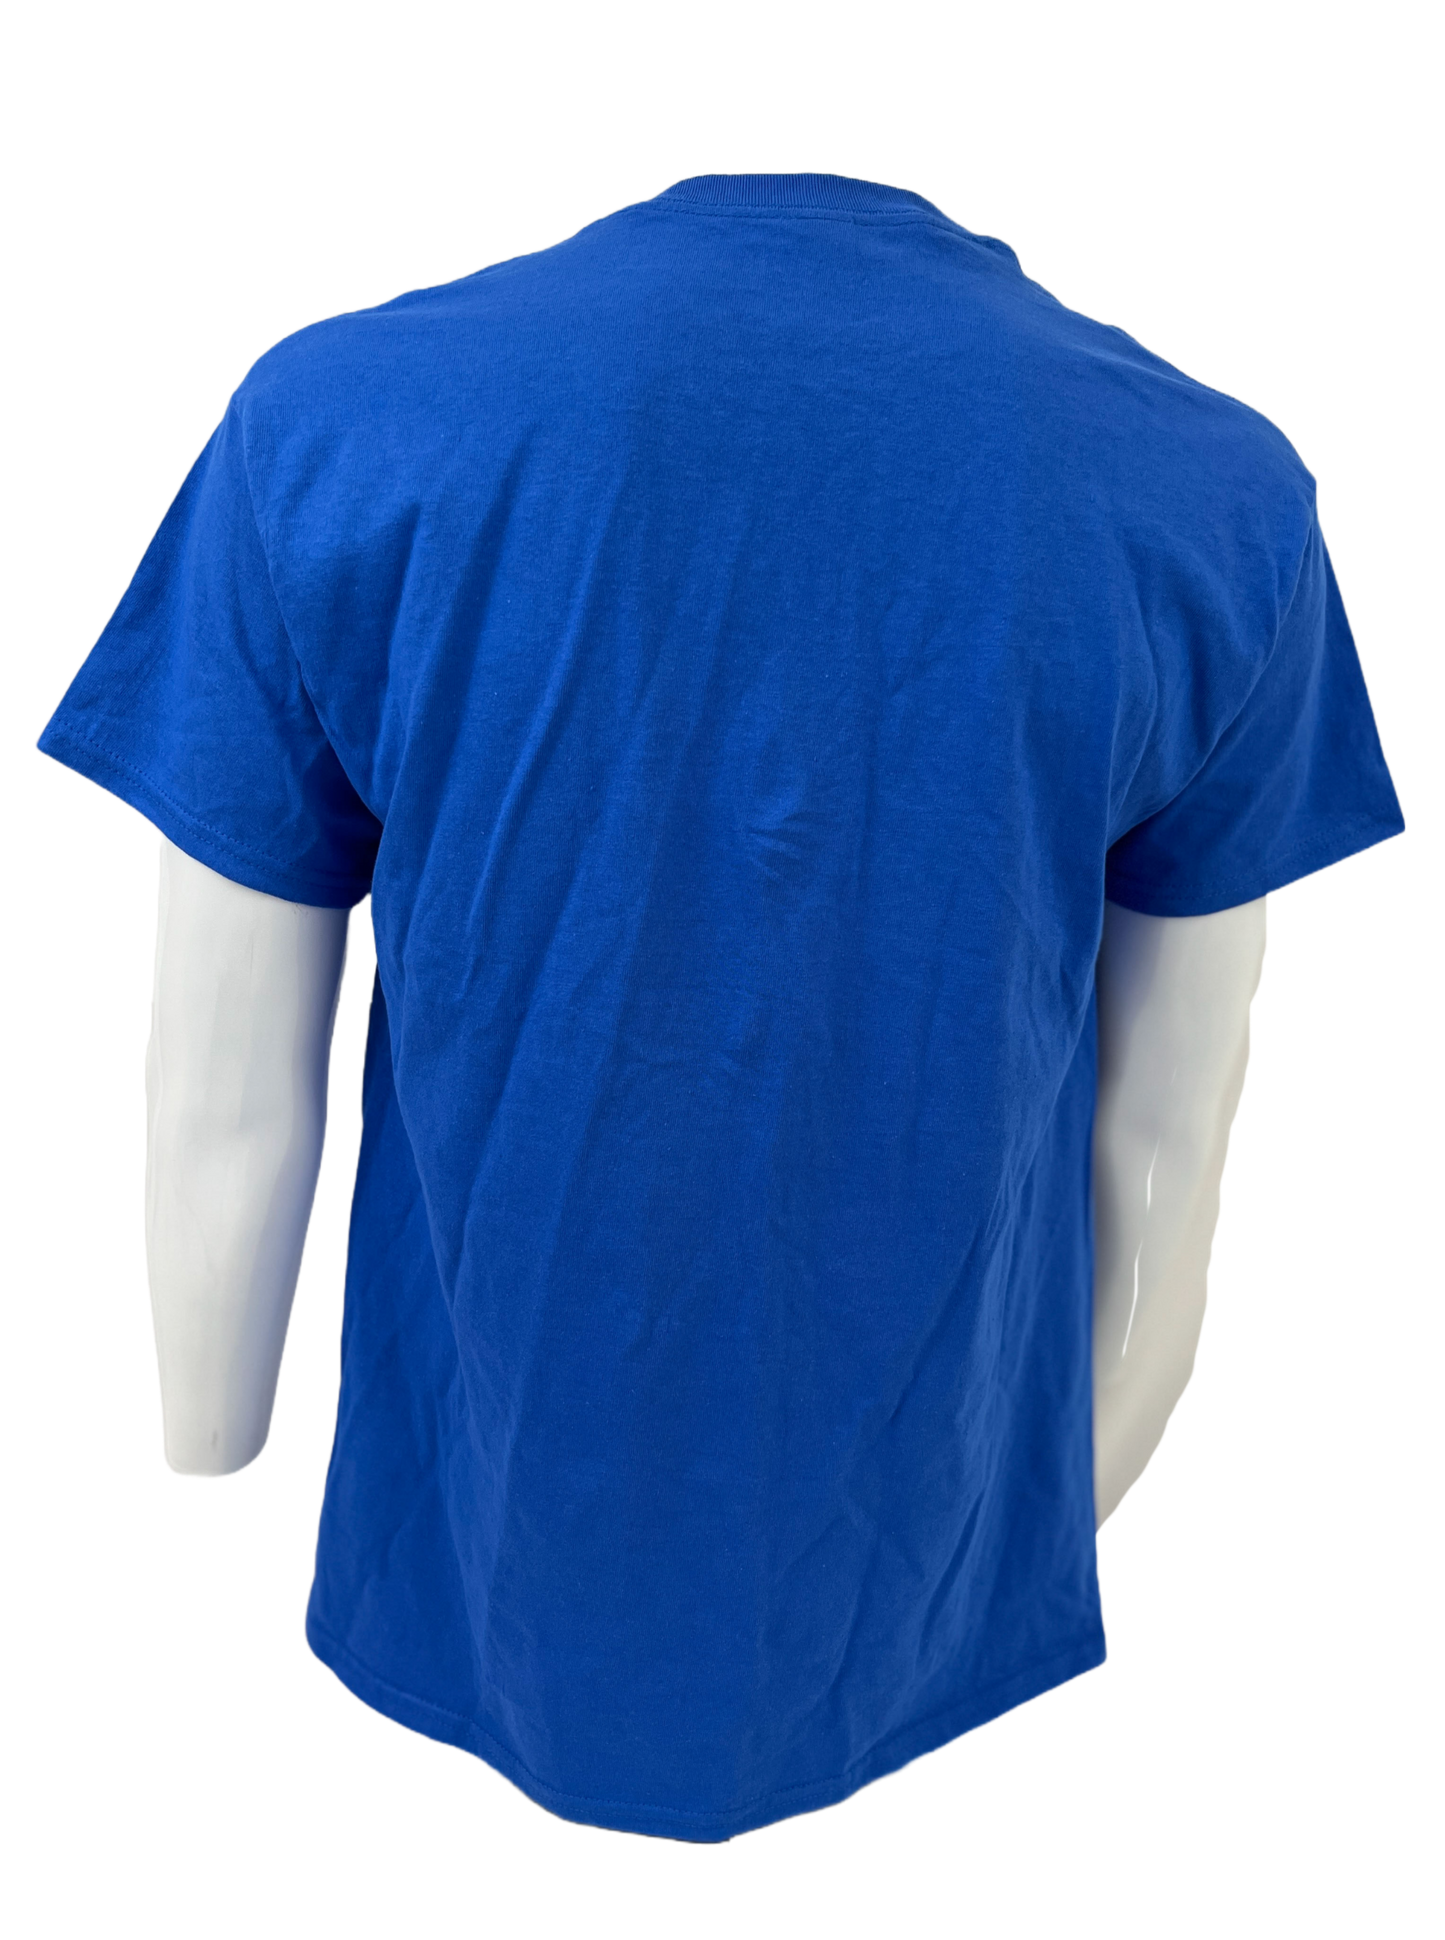 wristlocker blue shirt white font back view